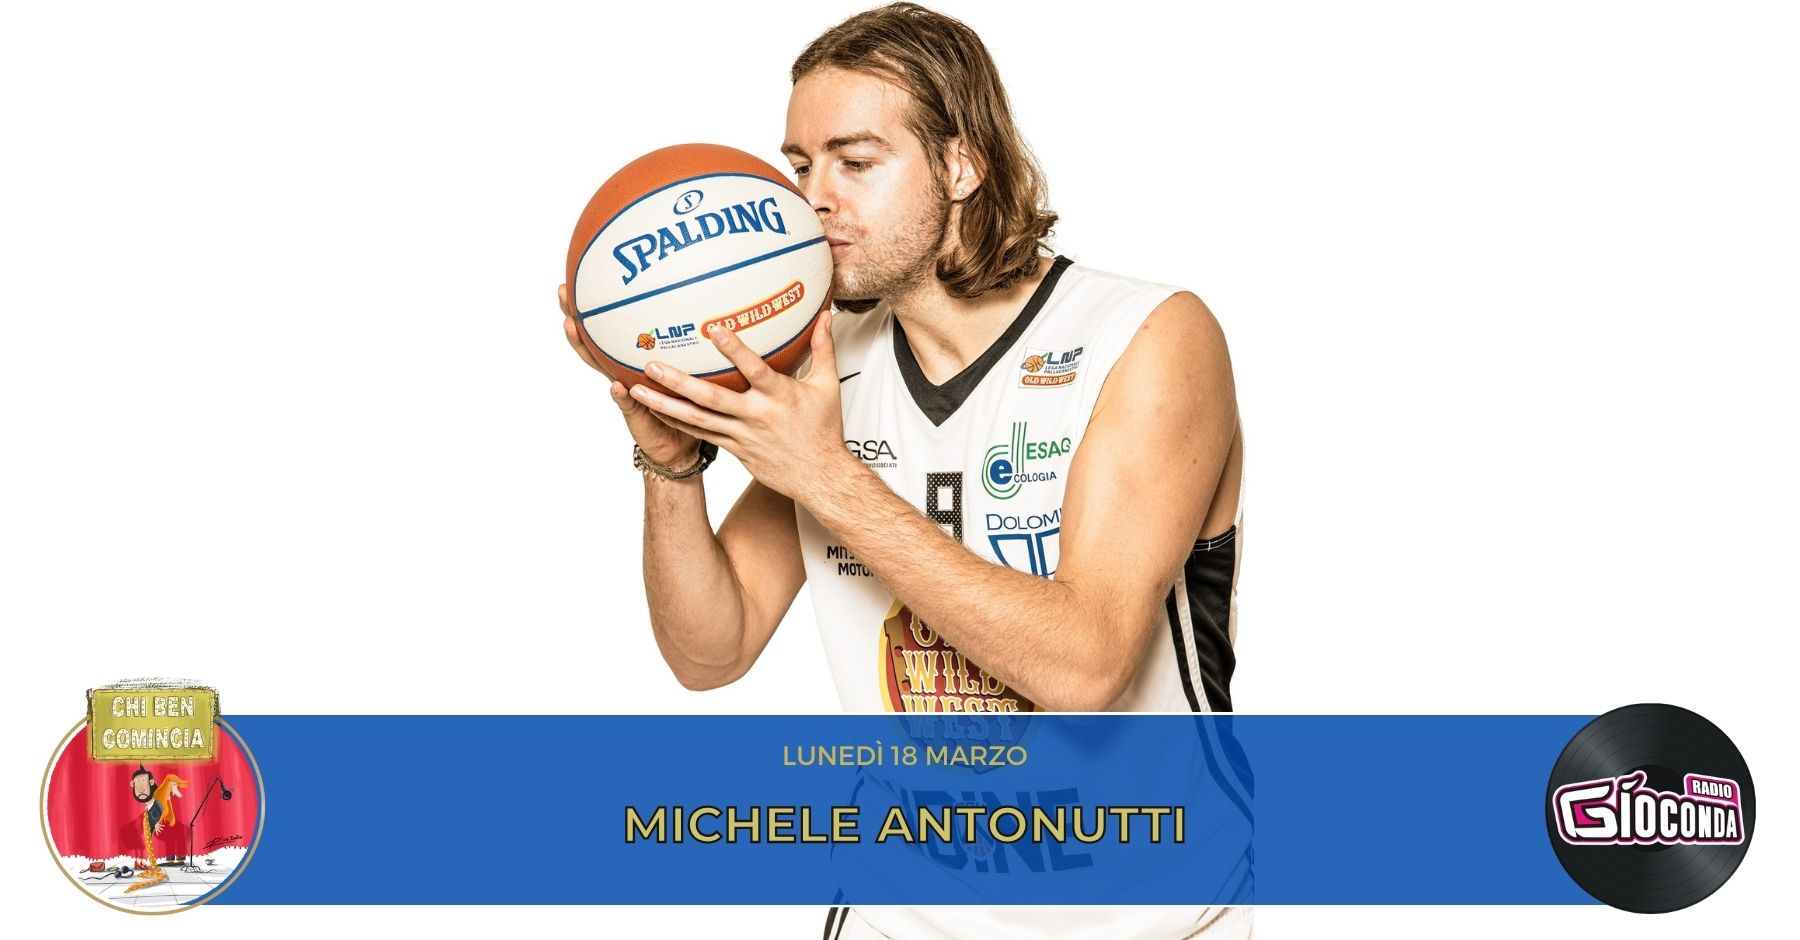 Michele Antonutti, simbolo del basket del Friuli-Venezia Giulia, è l’ospite della nuova puntata di “Chi ben comincia” in onda lunedì 11 marzo alle 18.00.